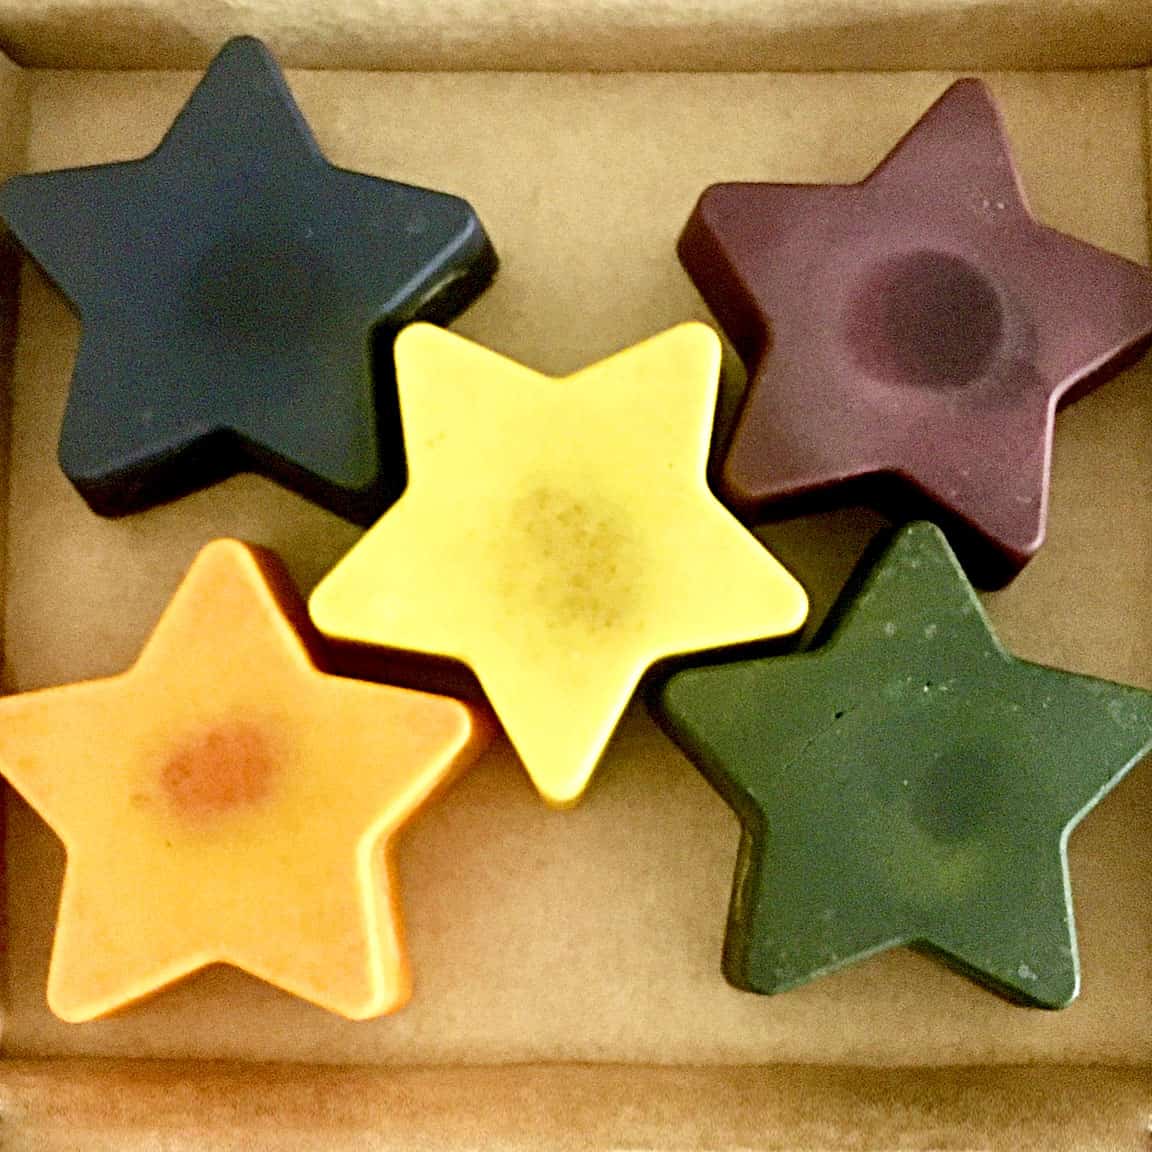 5 Solid Stars